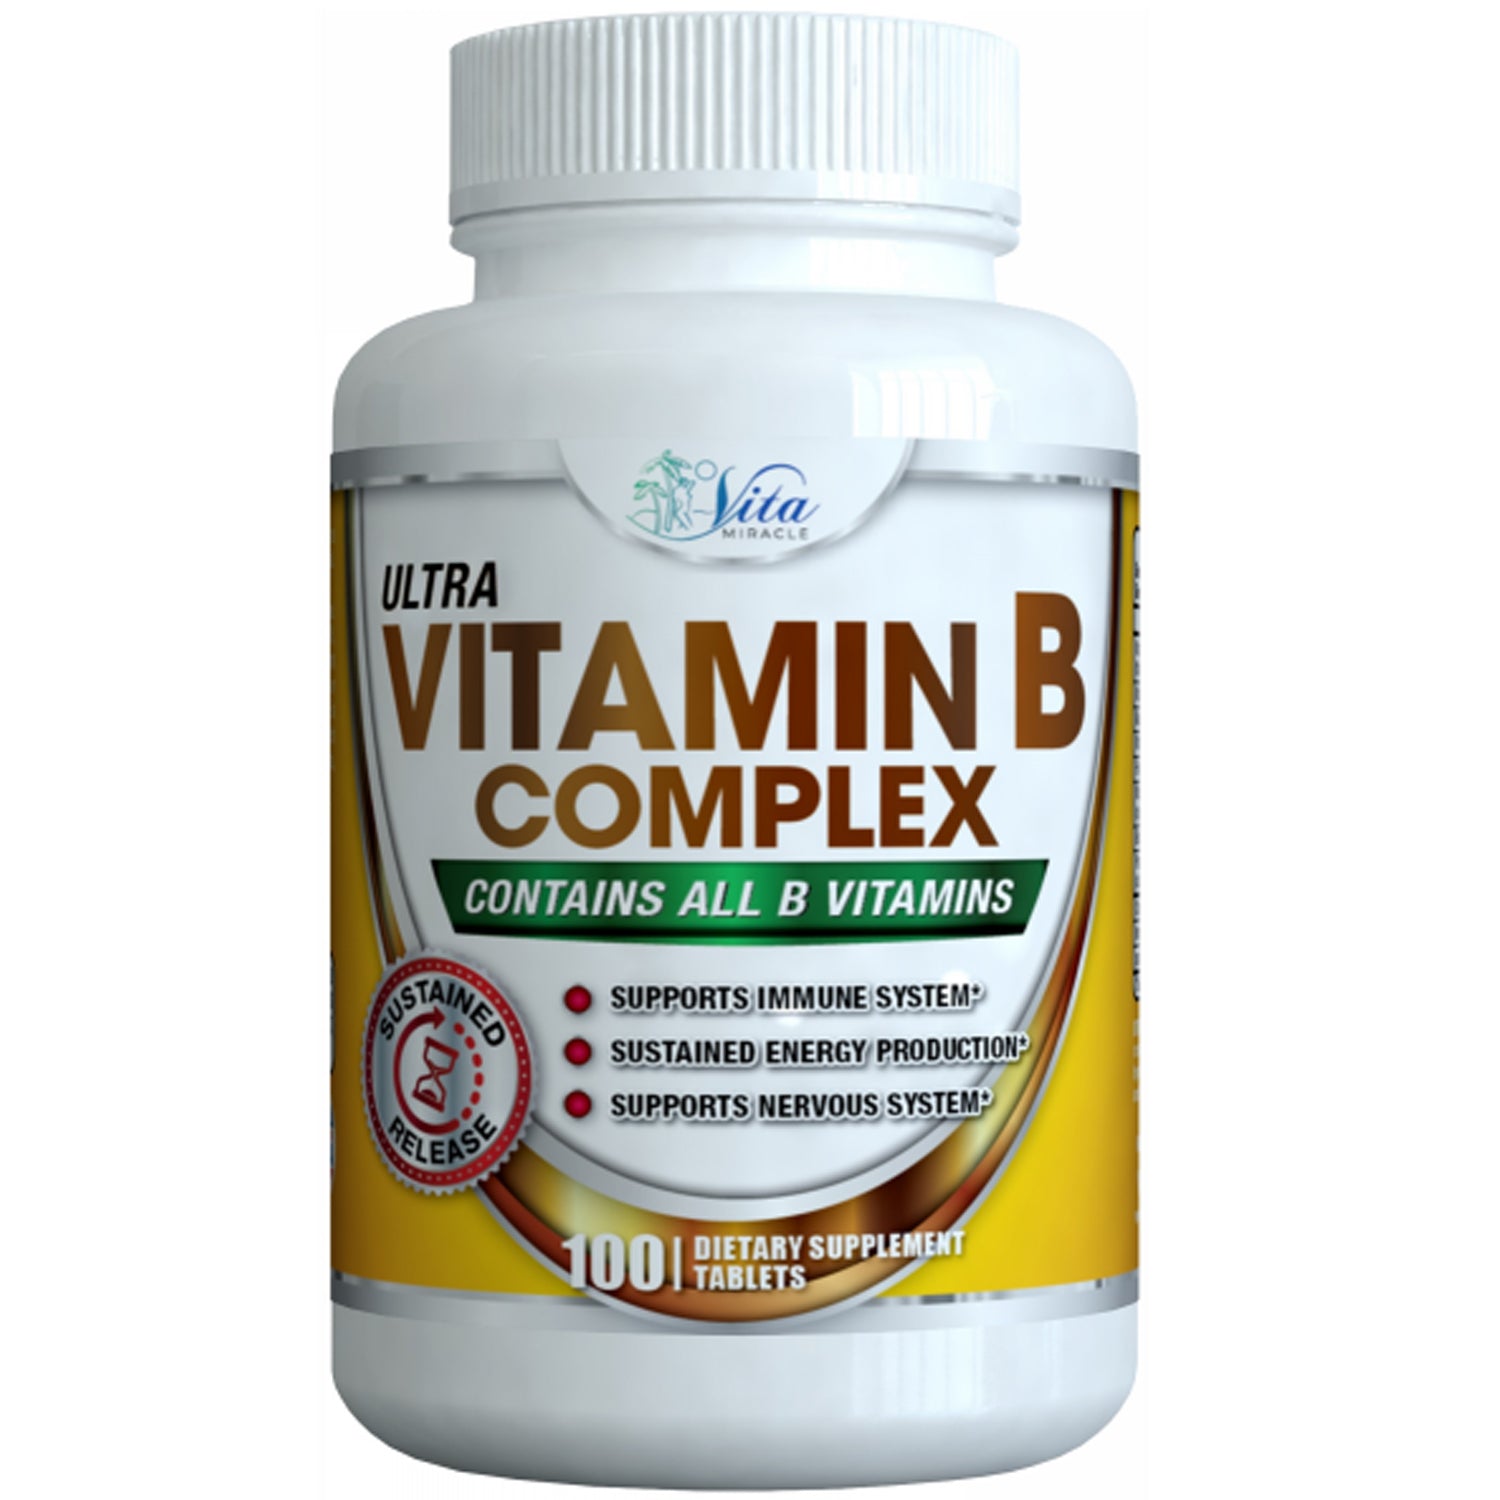 Super Vitamin B Complex Supplement